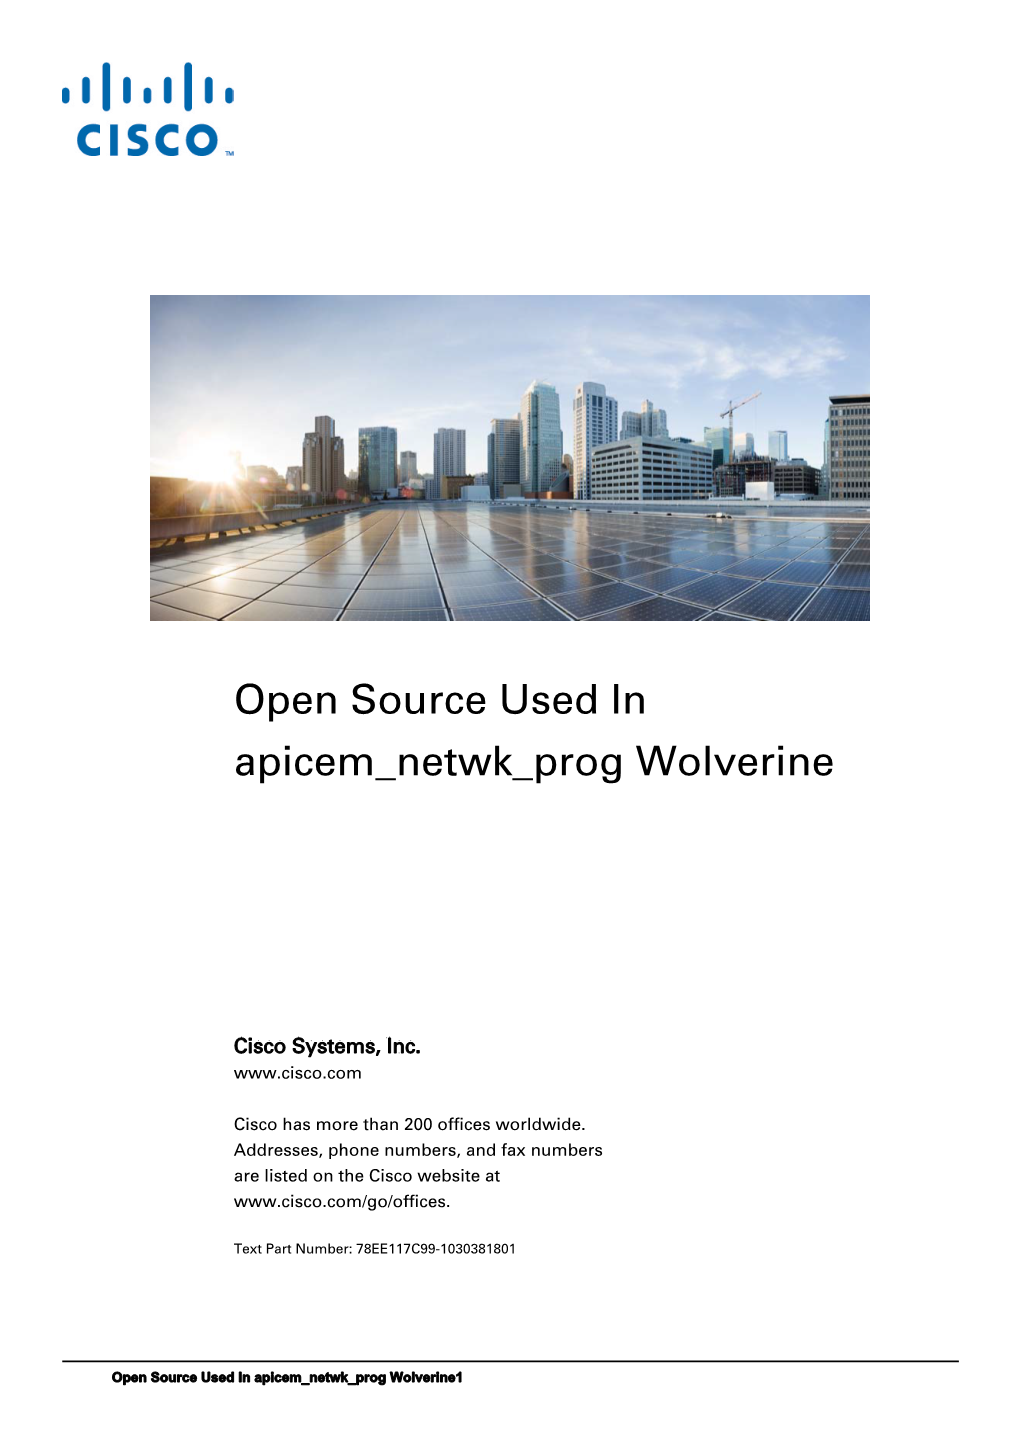 Open Source Used in Apicem Netwk Prog Wolverine